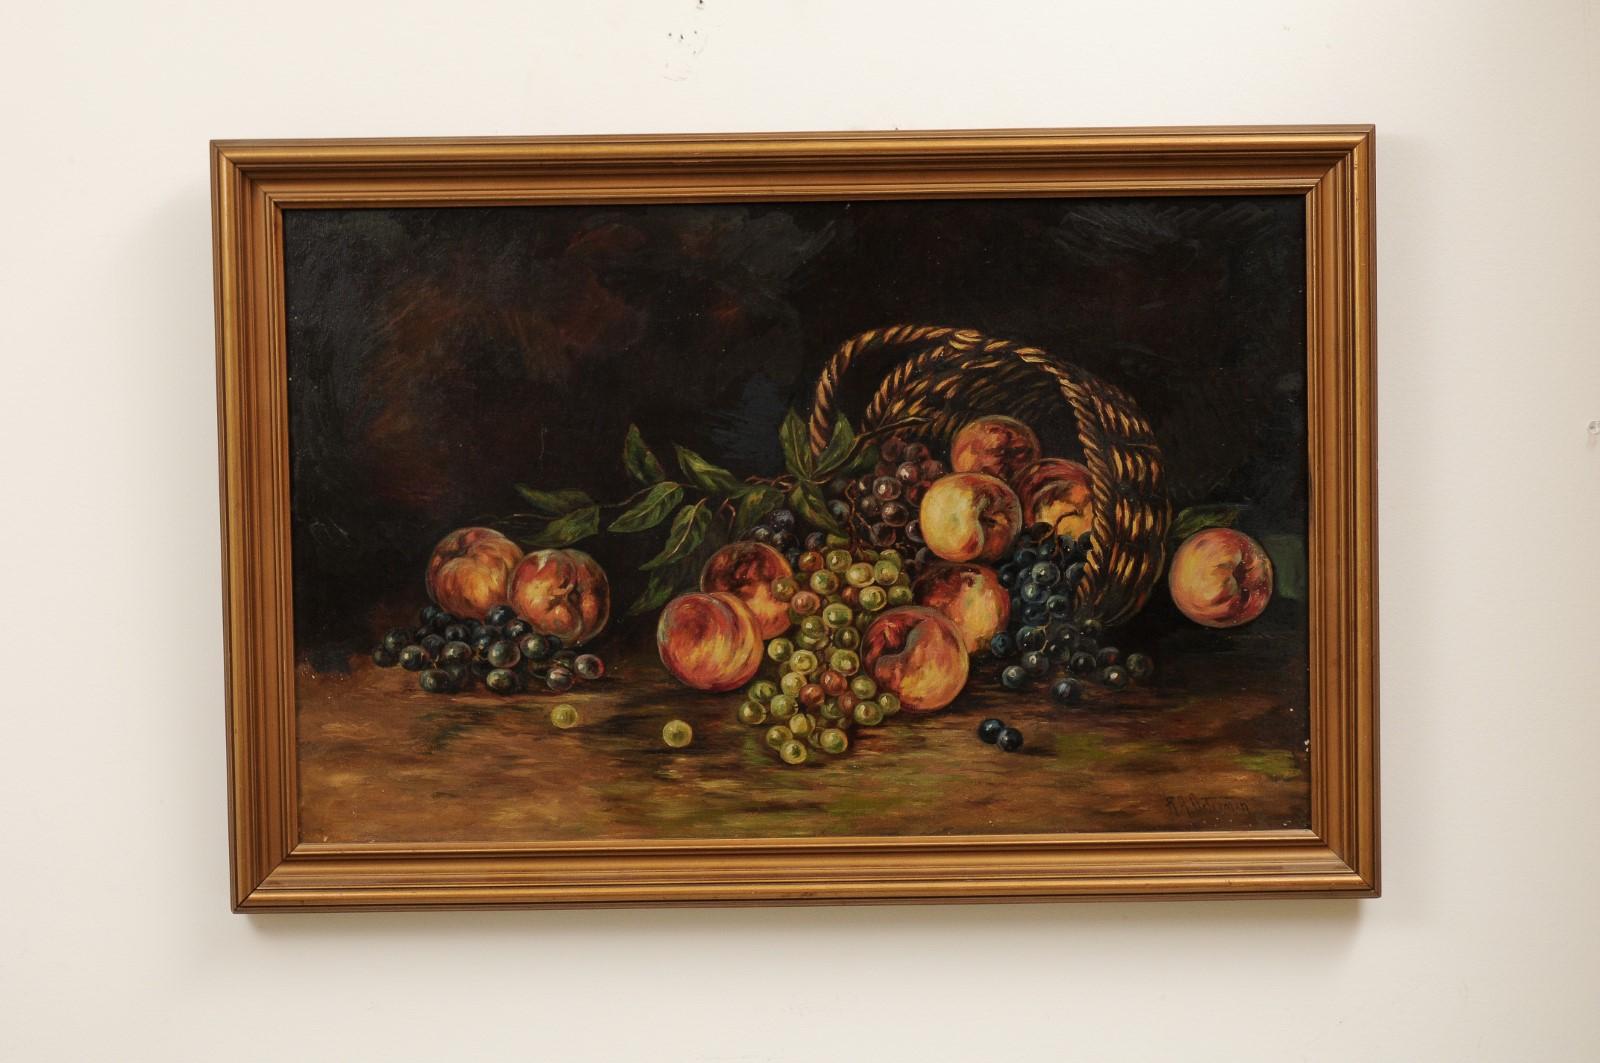 Une peinture à l'huile américaine de nature morte du 19ème siècle représentant des fruits et sertie dans un cadre doré. Créée aux États-Unis au XIXe siècle, cette nature morte présente une palette sombre qui complète parfaitement le sujet. Des